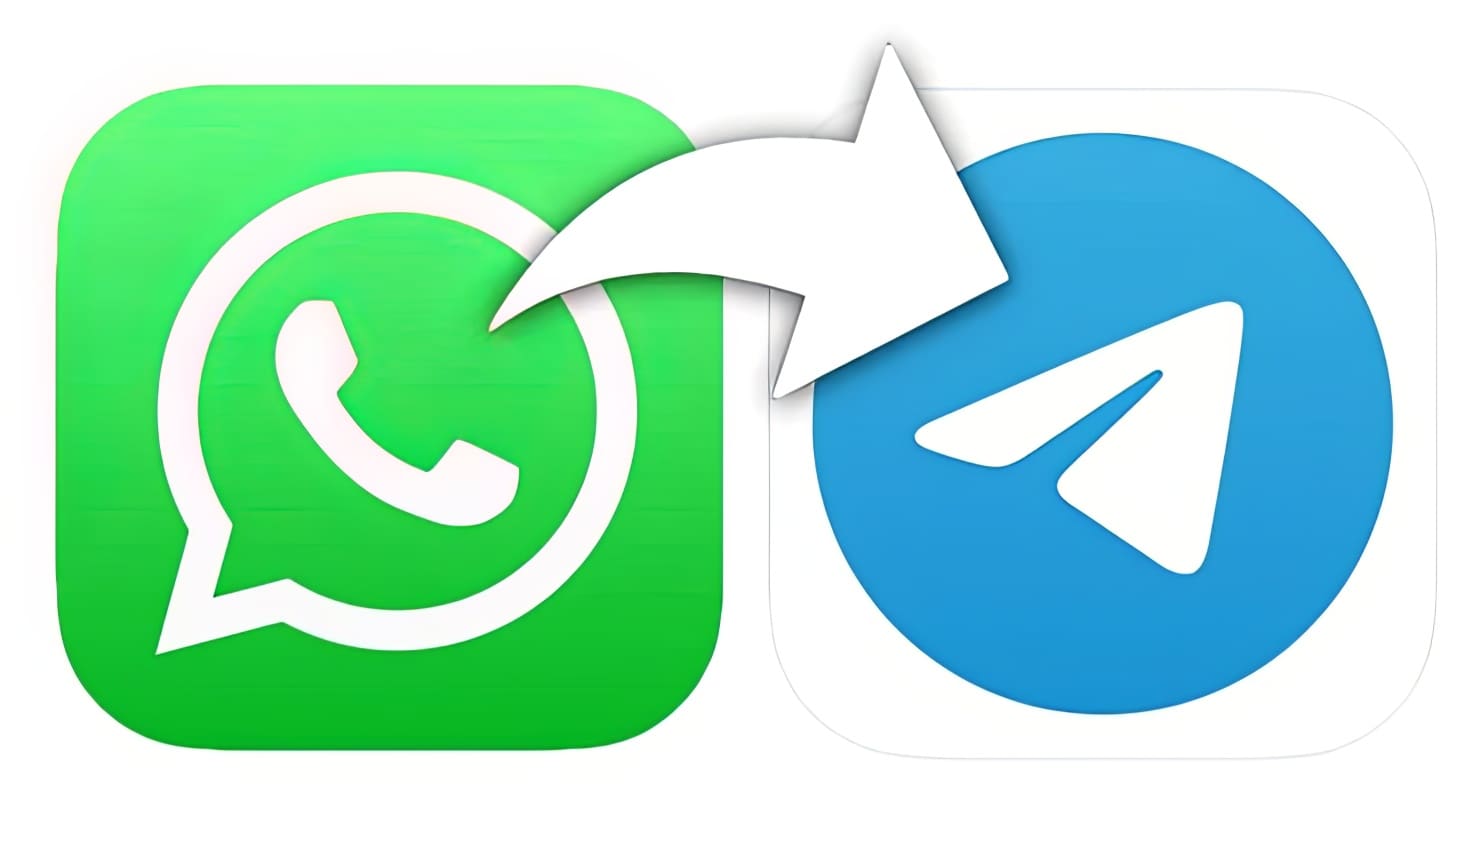 Как переносить чаты из WhatsApp в Telegram?